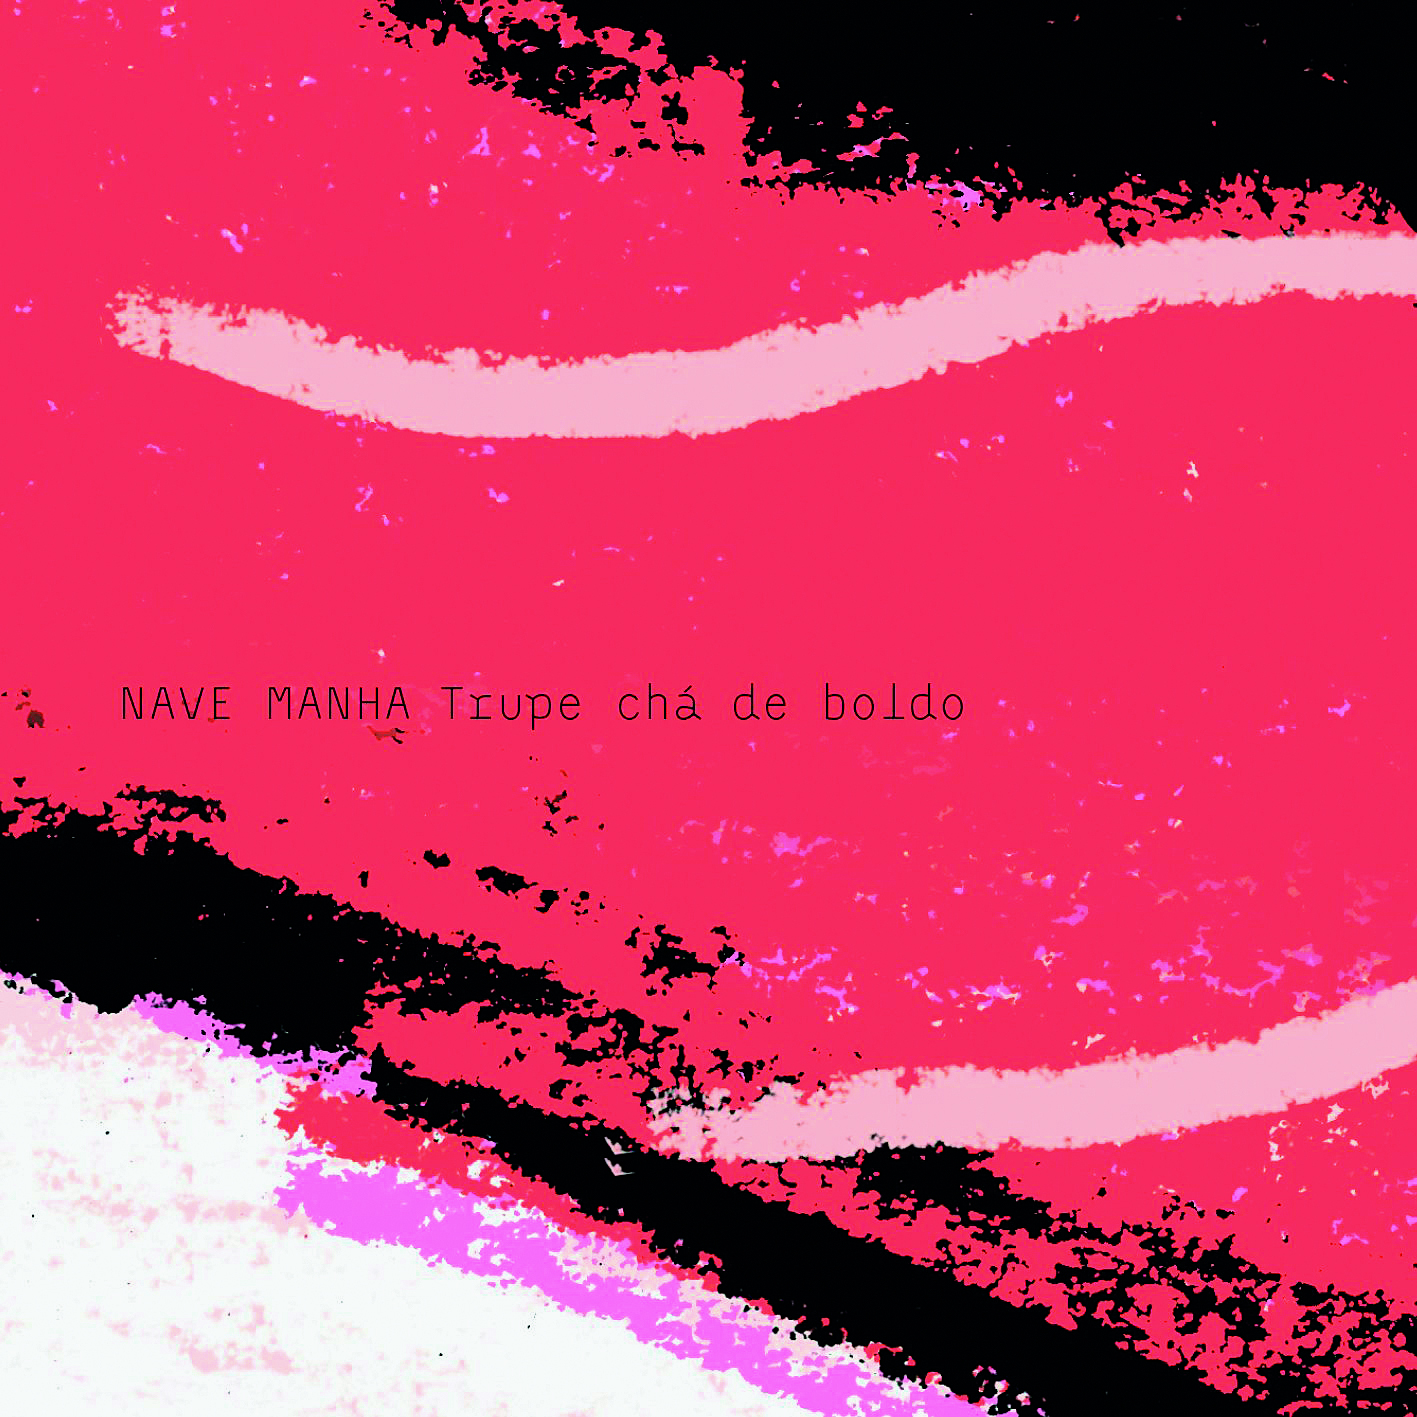 Reprodução de capa de disco. Grande mancha vermelha no centro. Ao redor dela, trechos em preto e rosa. No centro, em letras pequenas, o título.